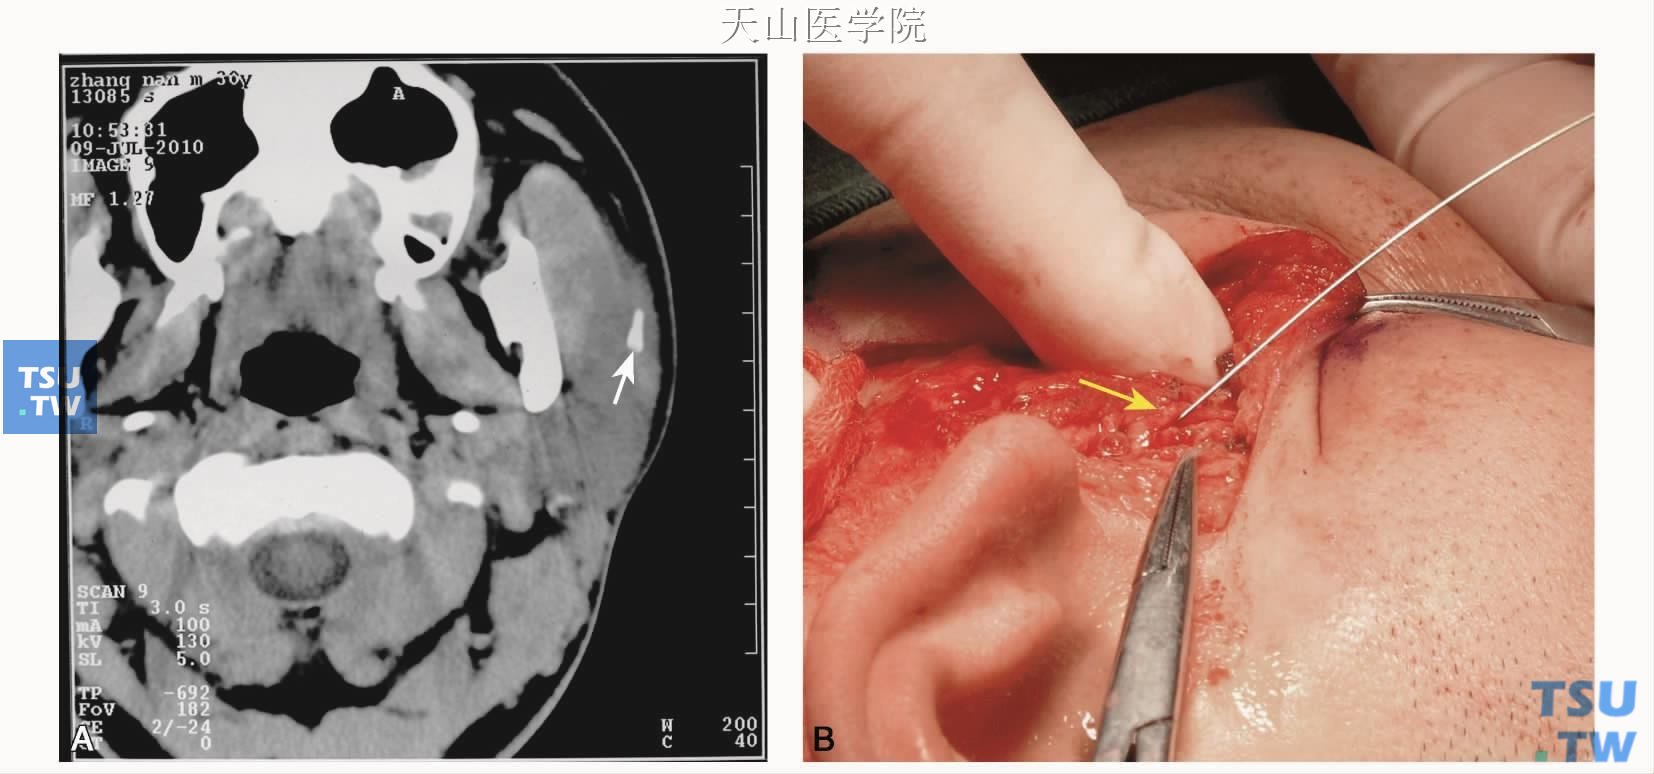 A.轴位CT图像显示左腮腺导管腺门部结石（↑）；B.腮腺翻瓣后解剖主导管取石，并经主导管切口（↑）探查导管腺内段，取出残余结石；